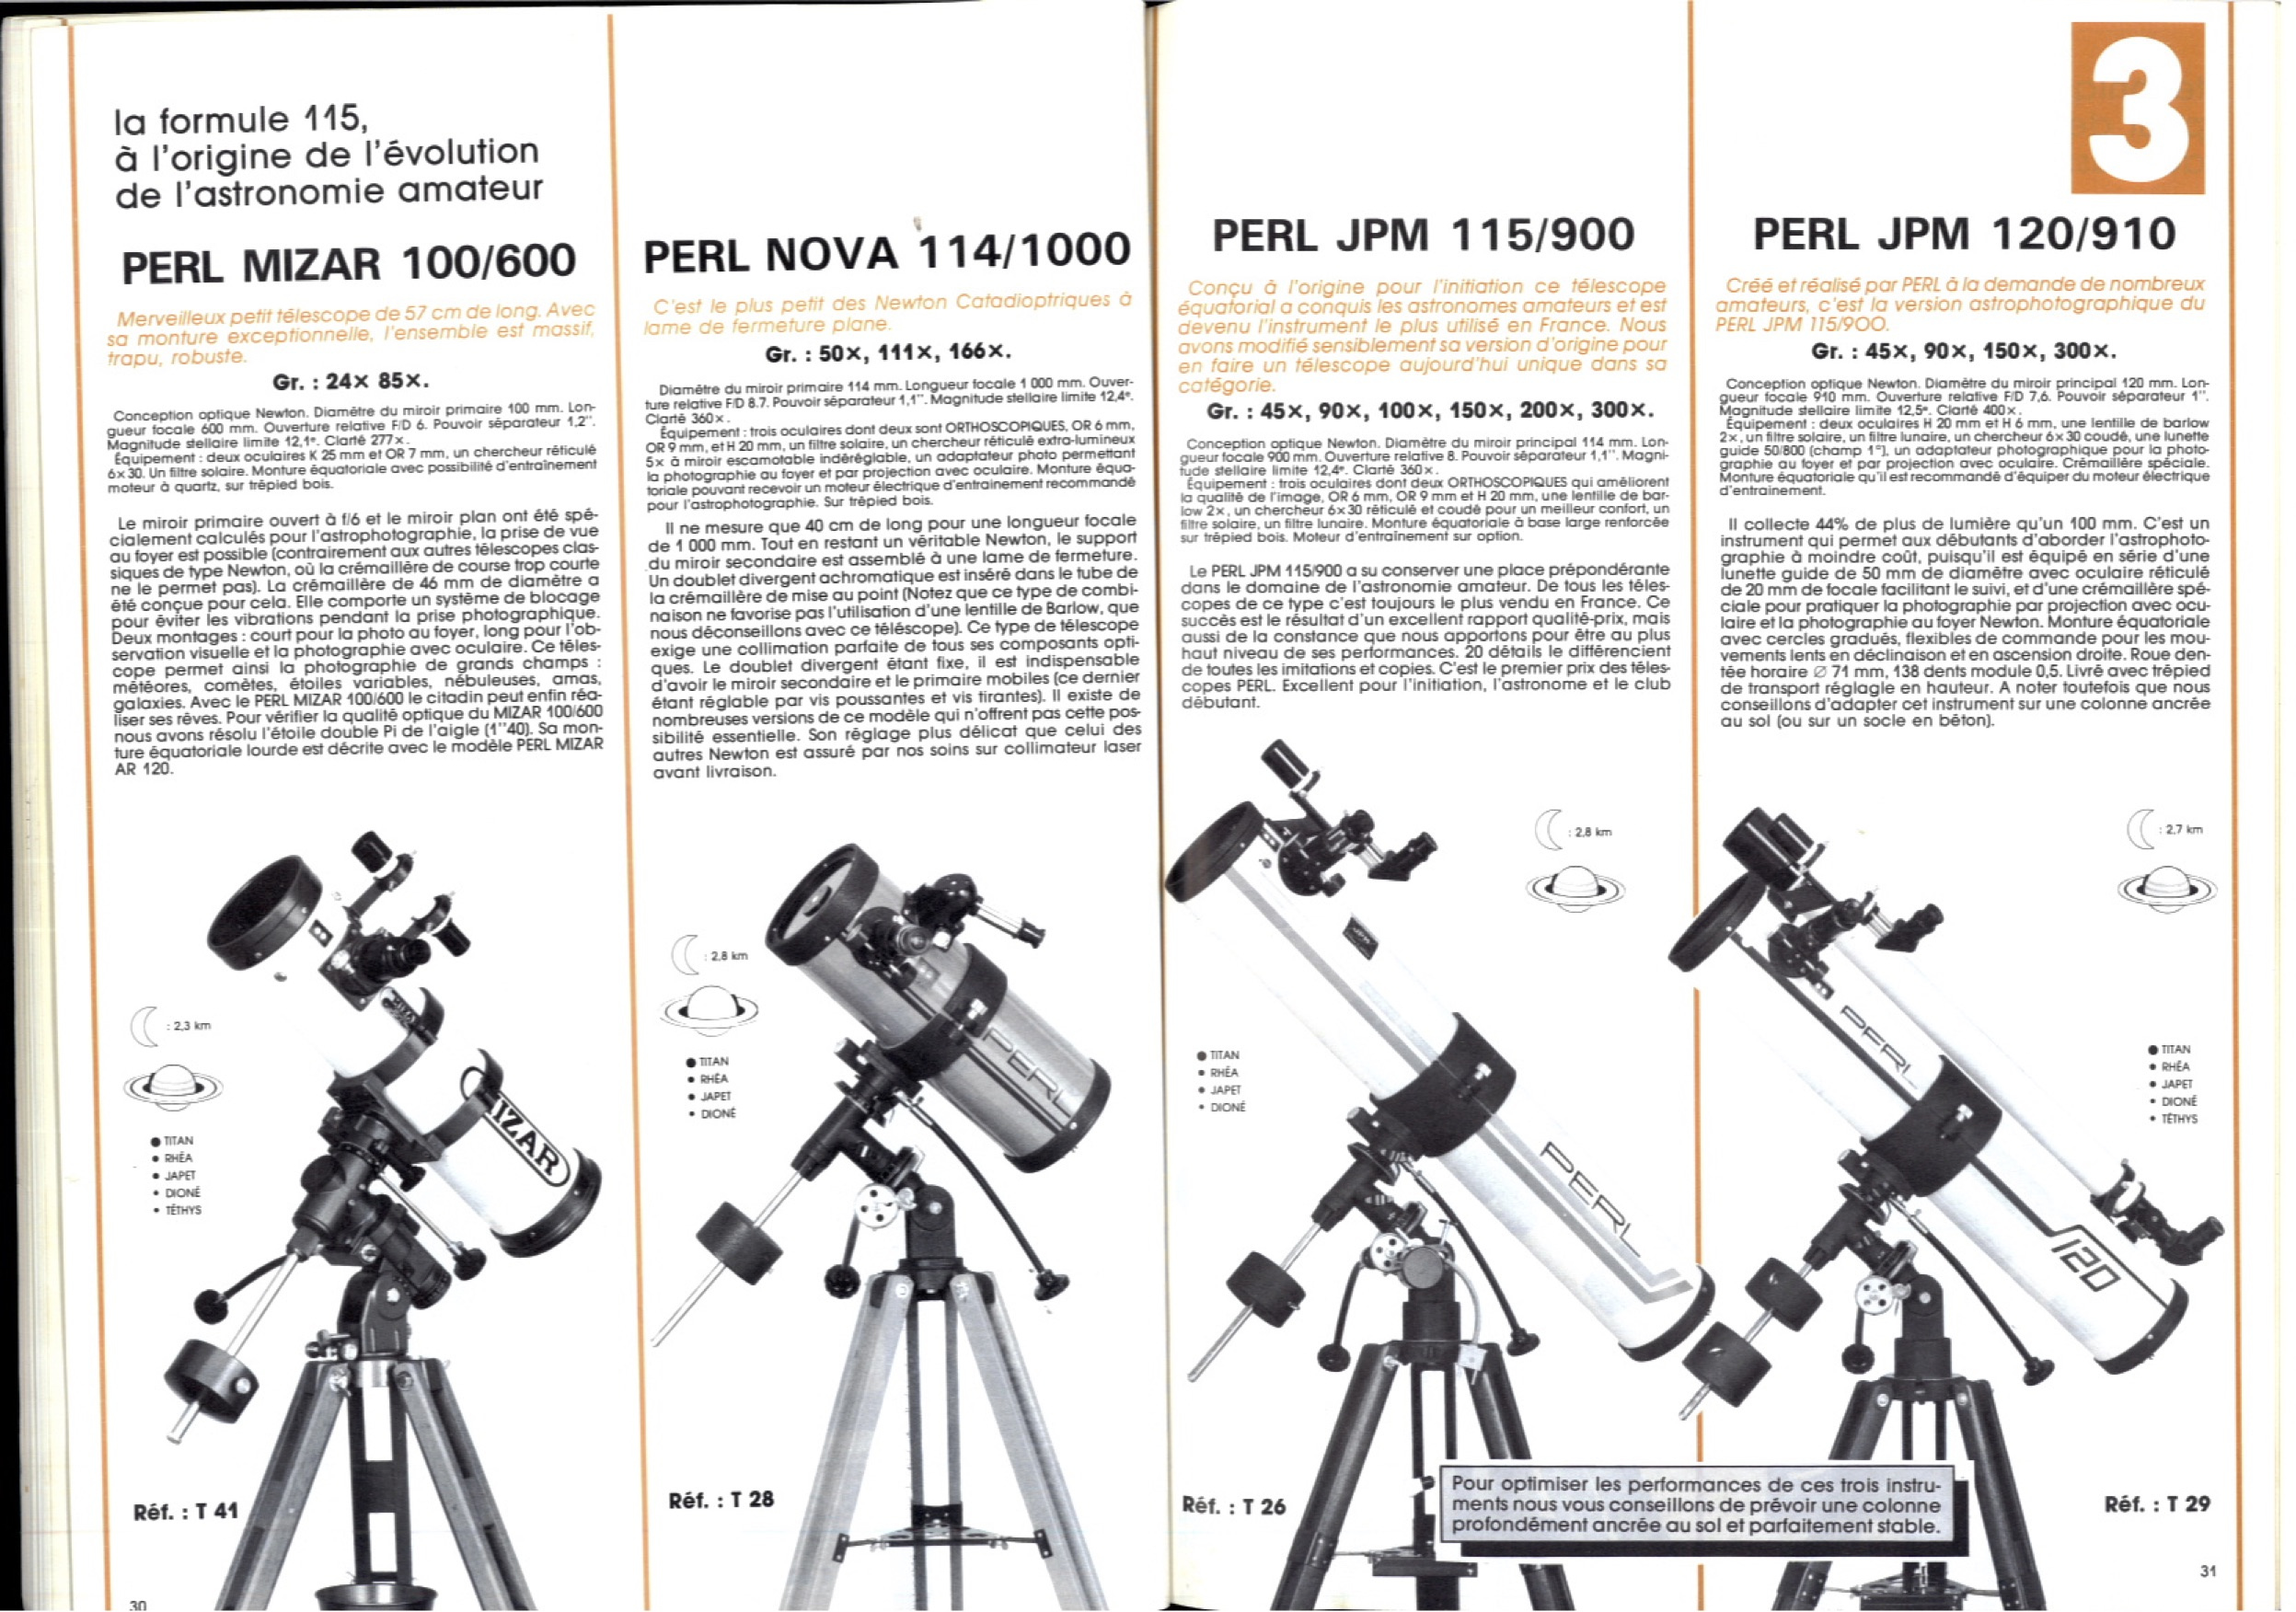 Résultat de recherche d'images pour "telescope Perl Nova 114/1000"